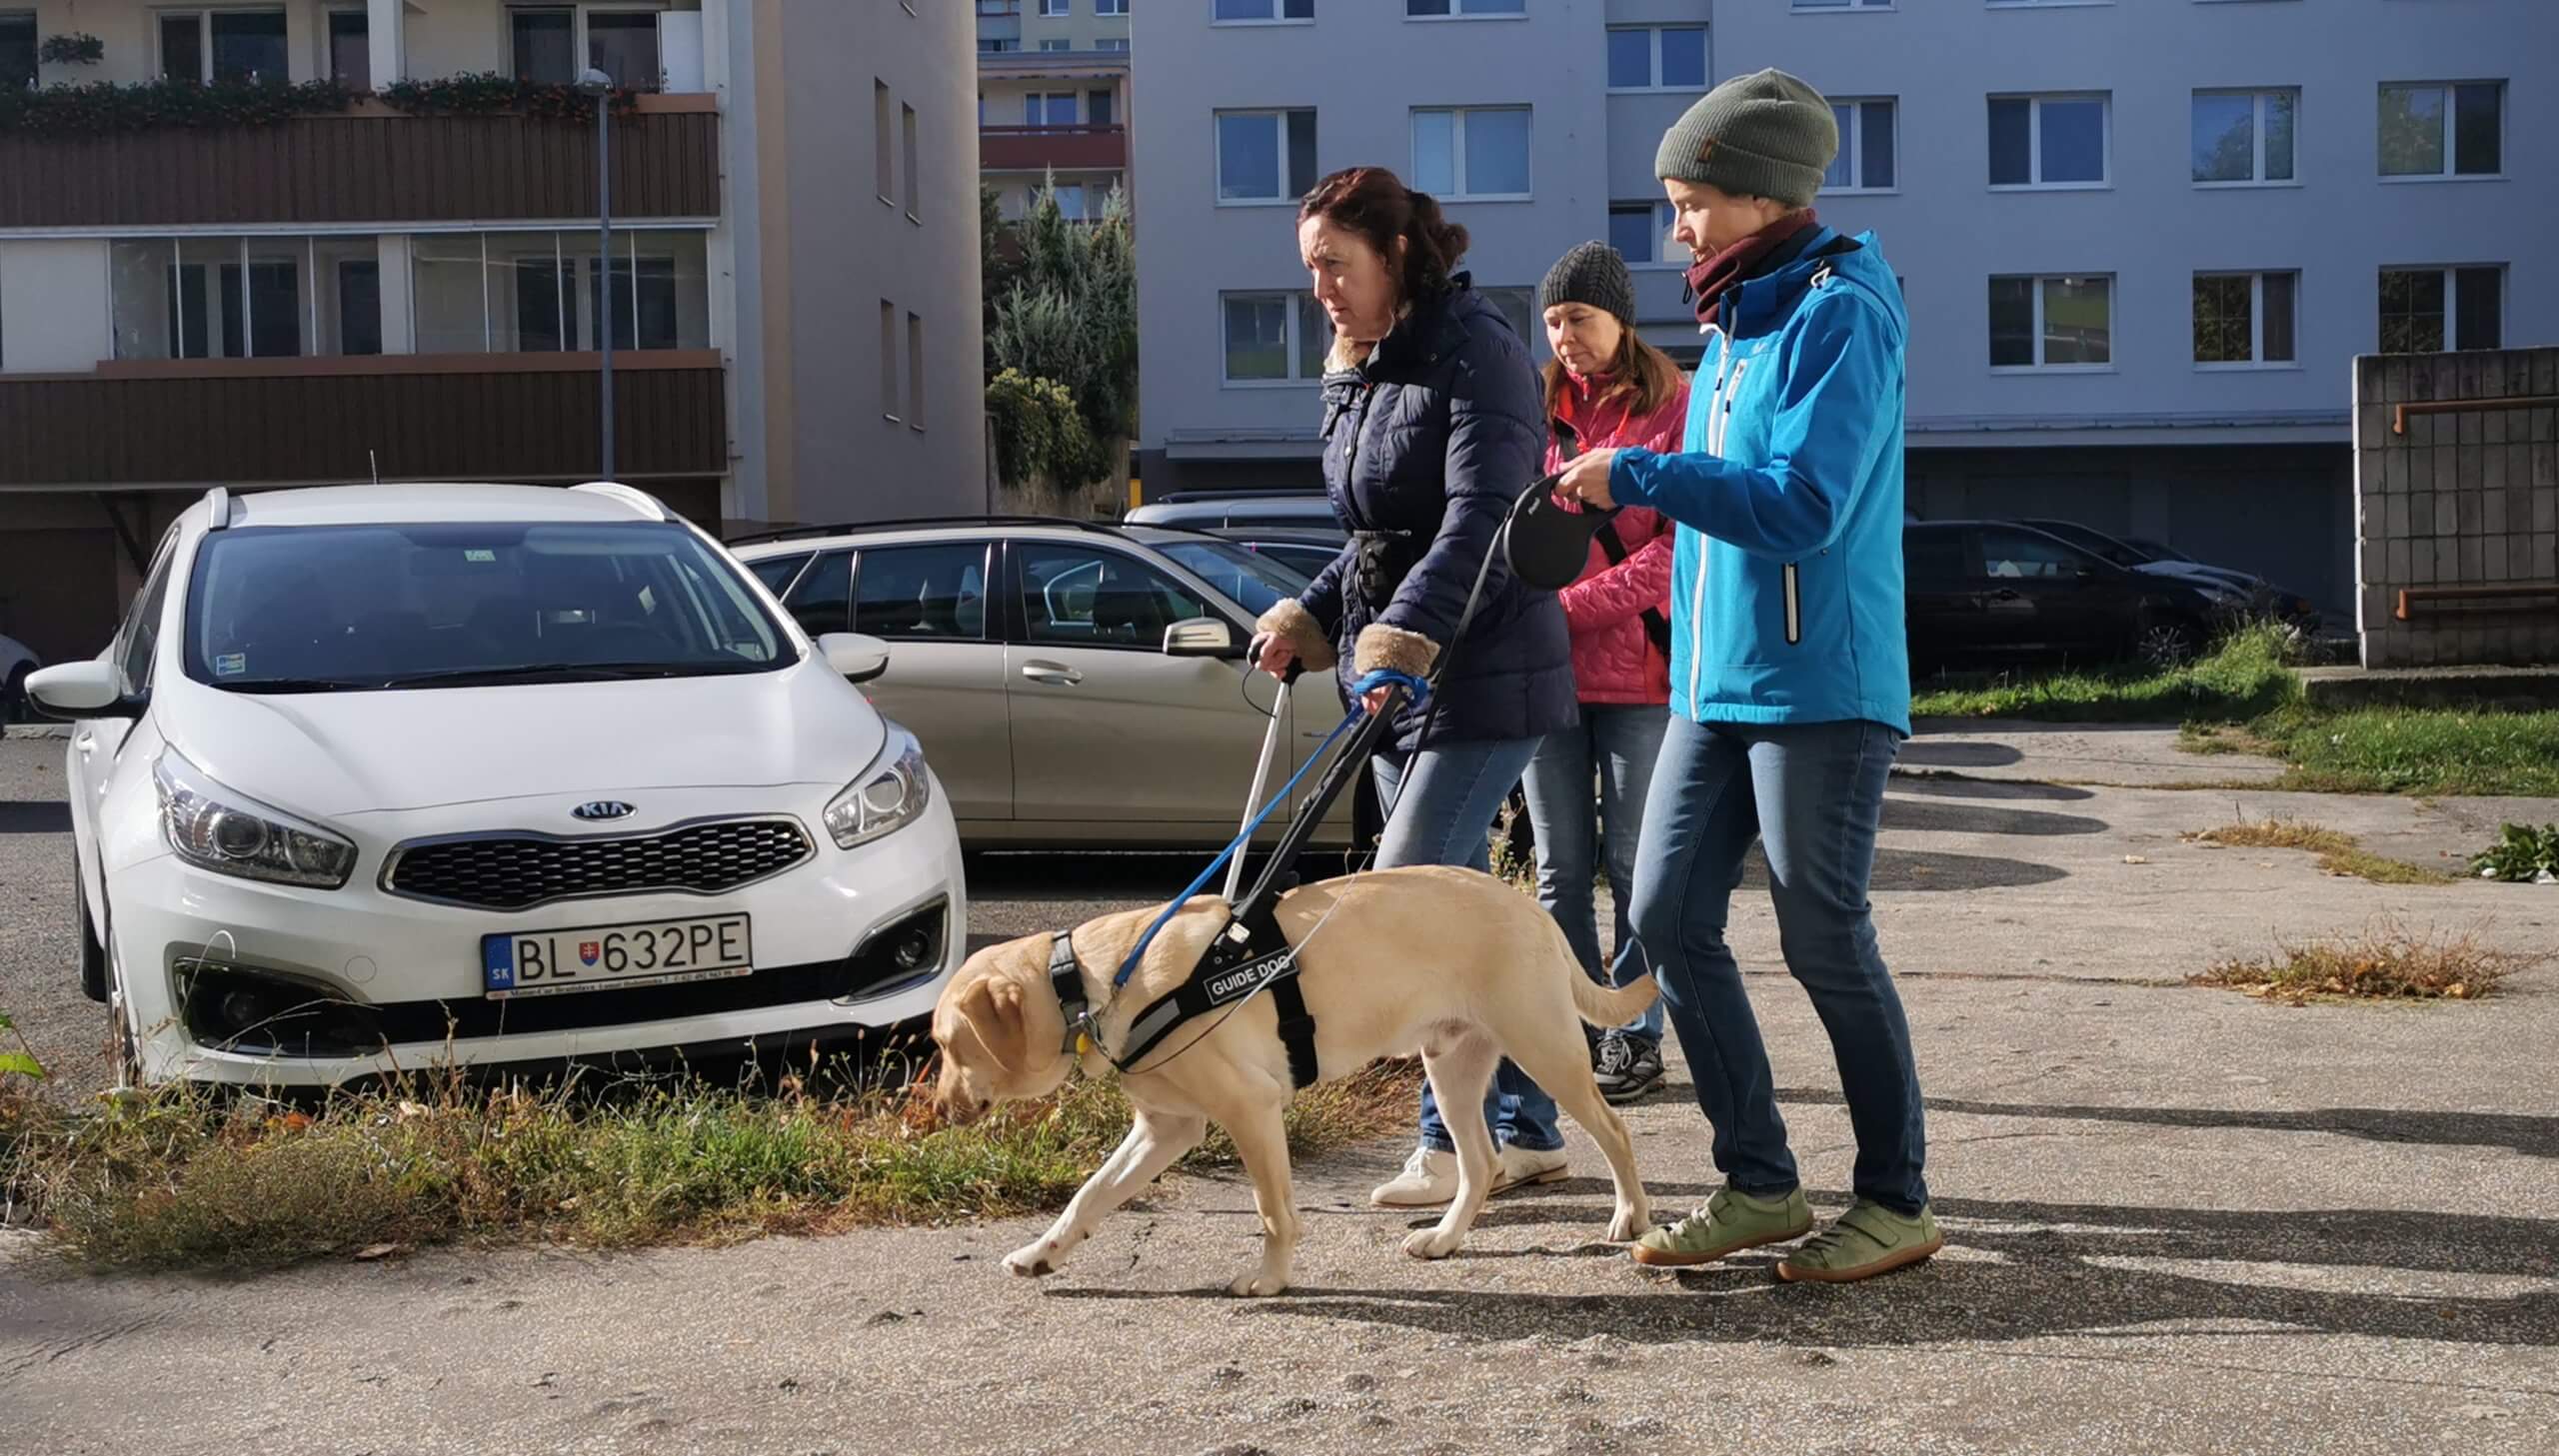 Klientka kráča po chodníku s vodiacim psom v postroji. Jedna cvičiteľka má psa ešte na dlhom vodítku a druhá z diaľky pozoruje ich prácu.